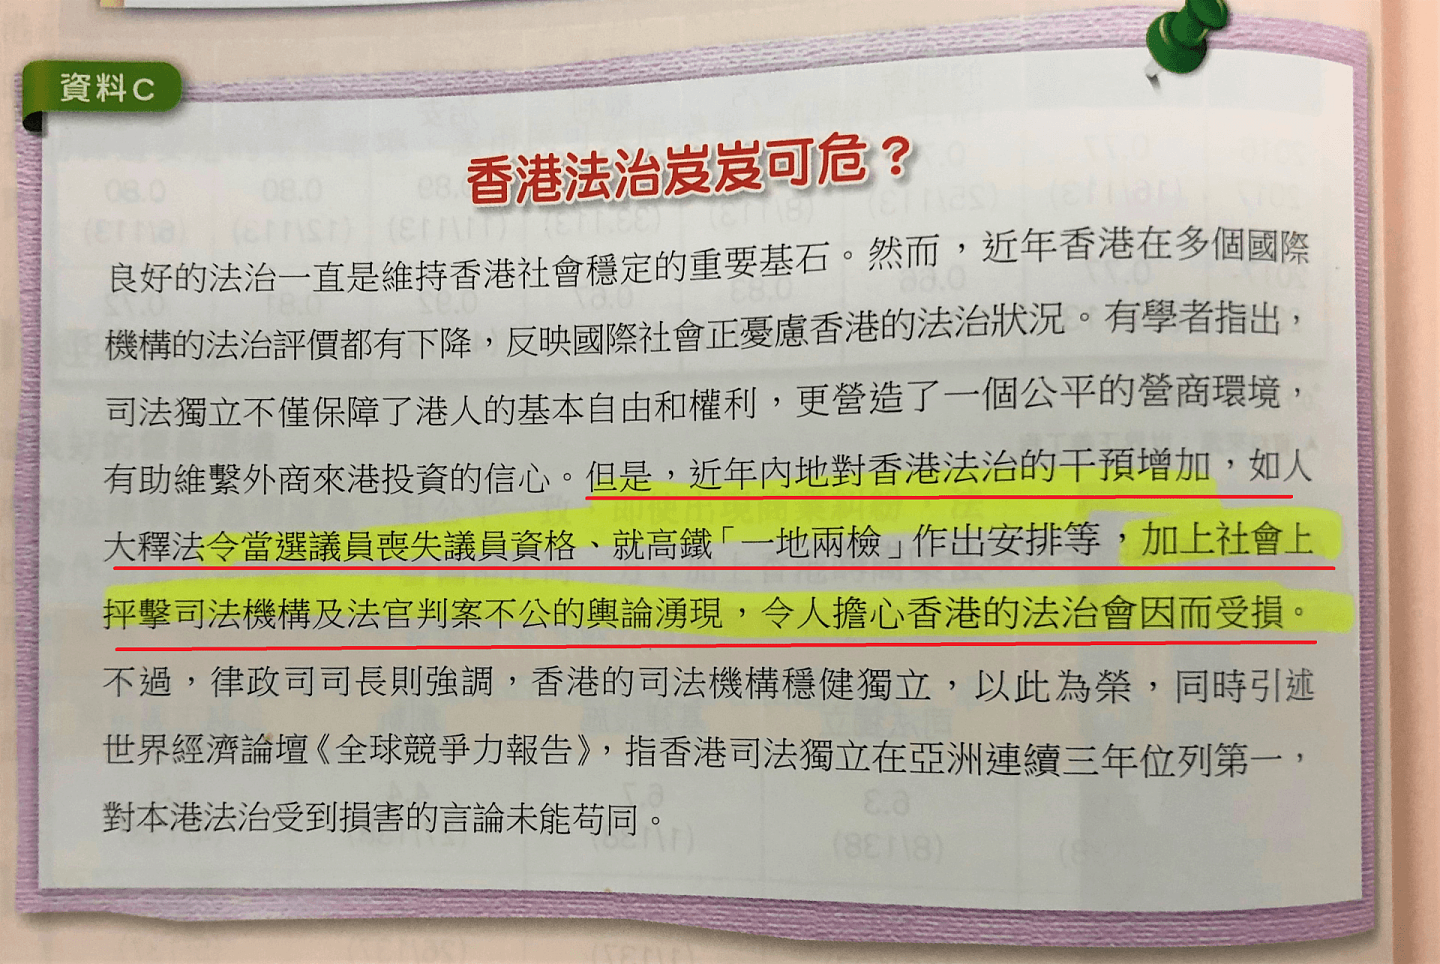 有涉及“法治”的思考题资料，在旧版本曾描述“近年内地对香港法治干预增加”等。（教科书截图）